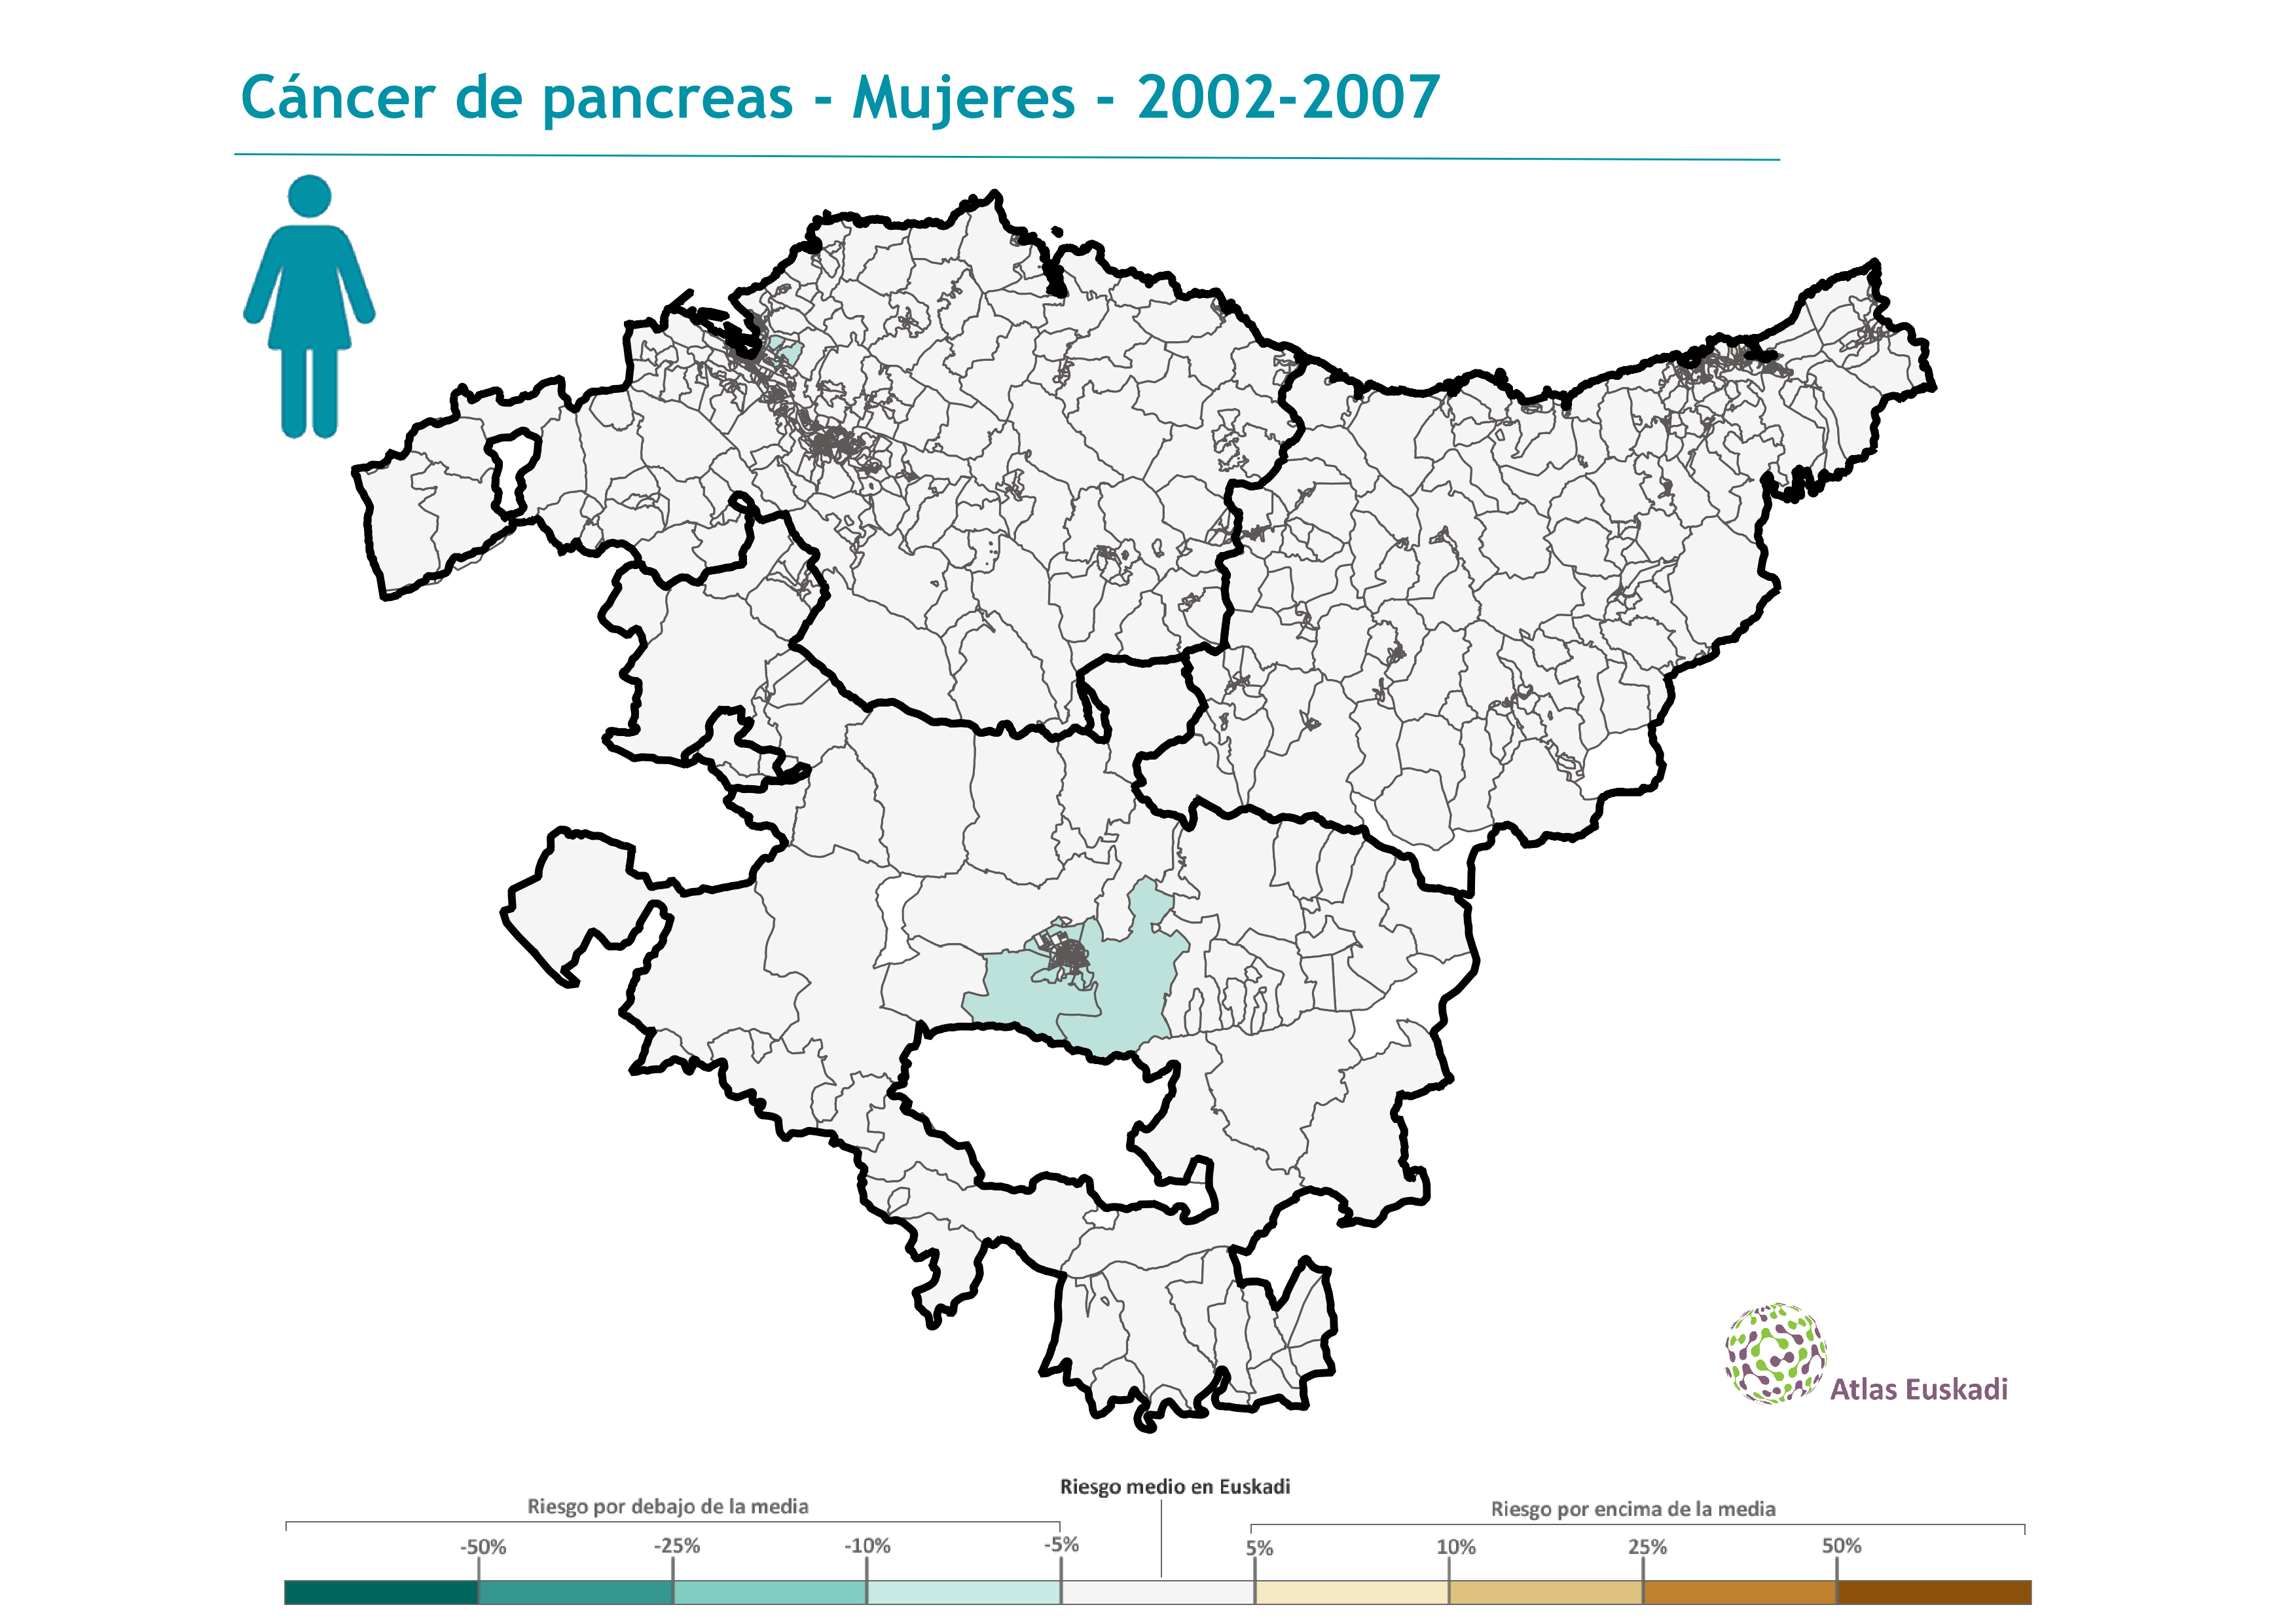 Cáncer de páncreas mujeres  2002-2007 Euskadi